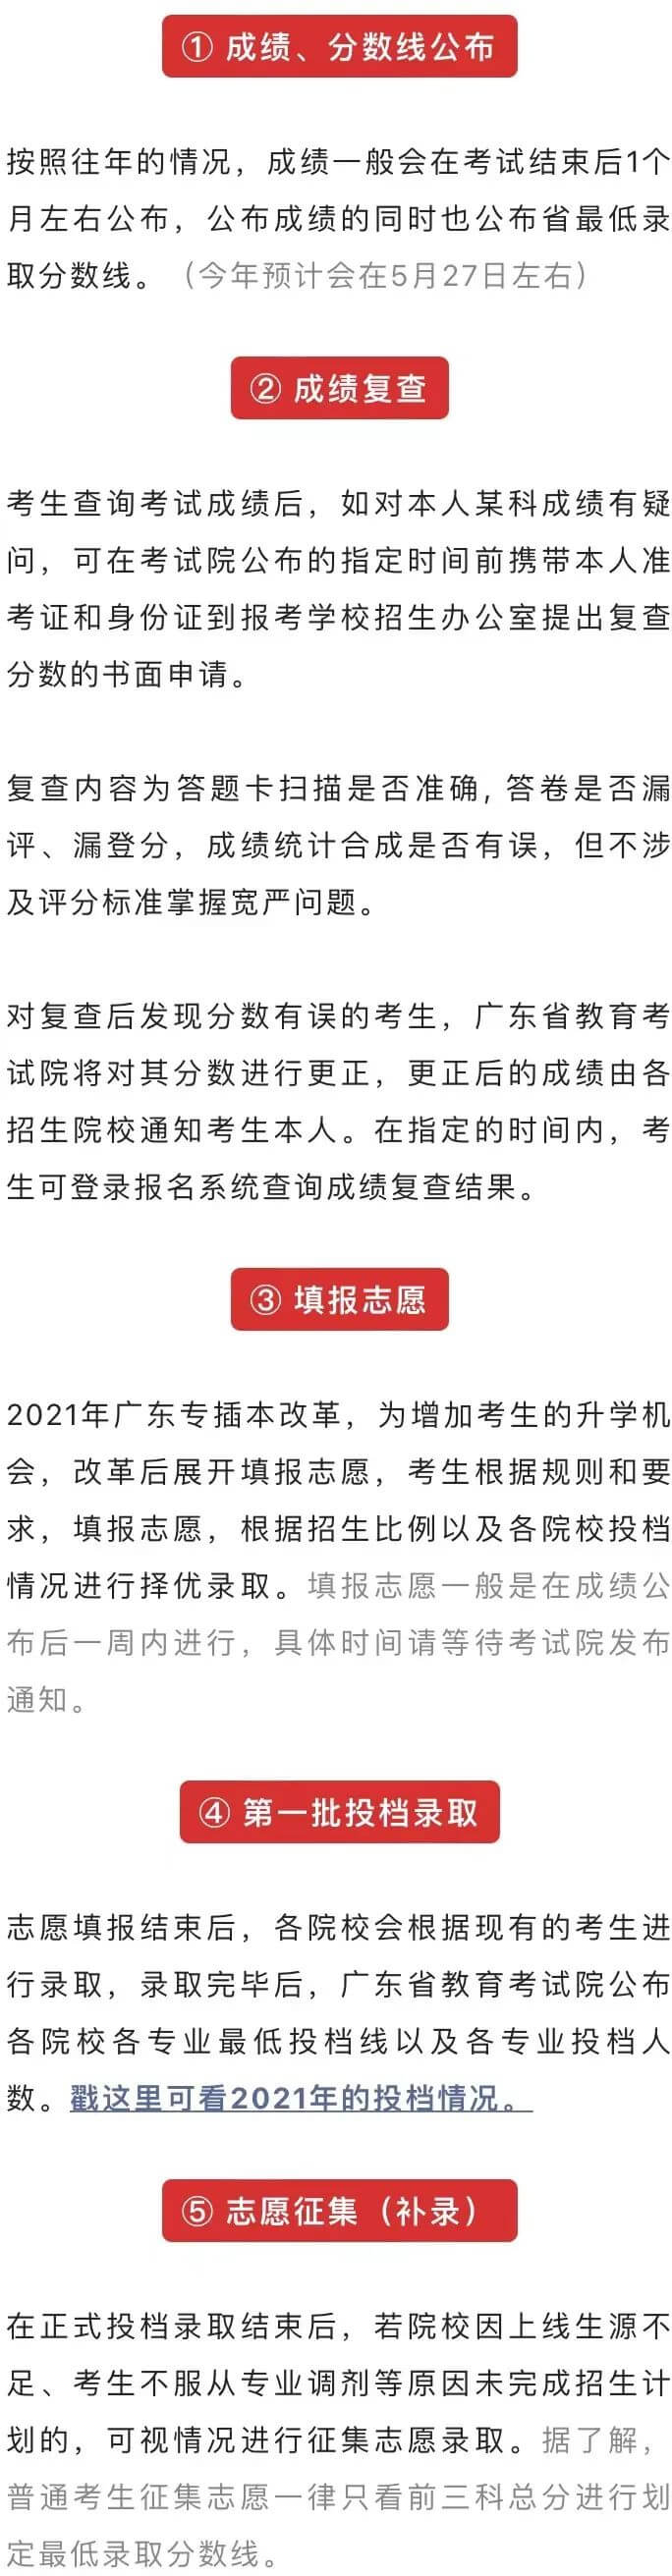 广东2022年普通专升本招生考试剩下10个阶段!